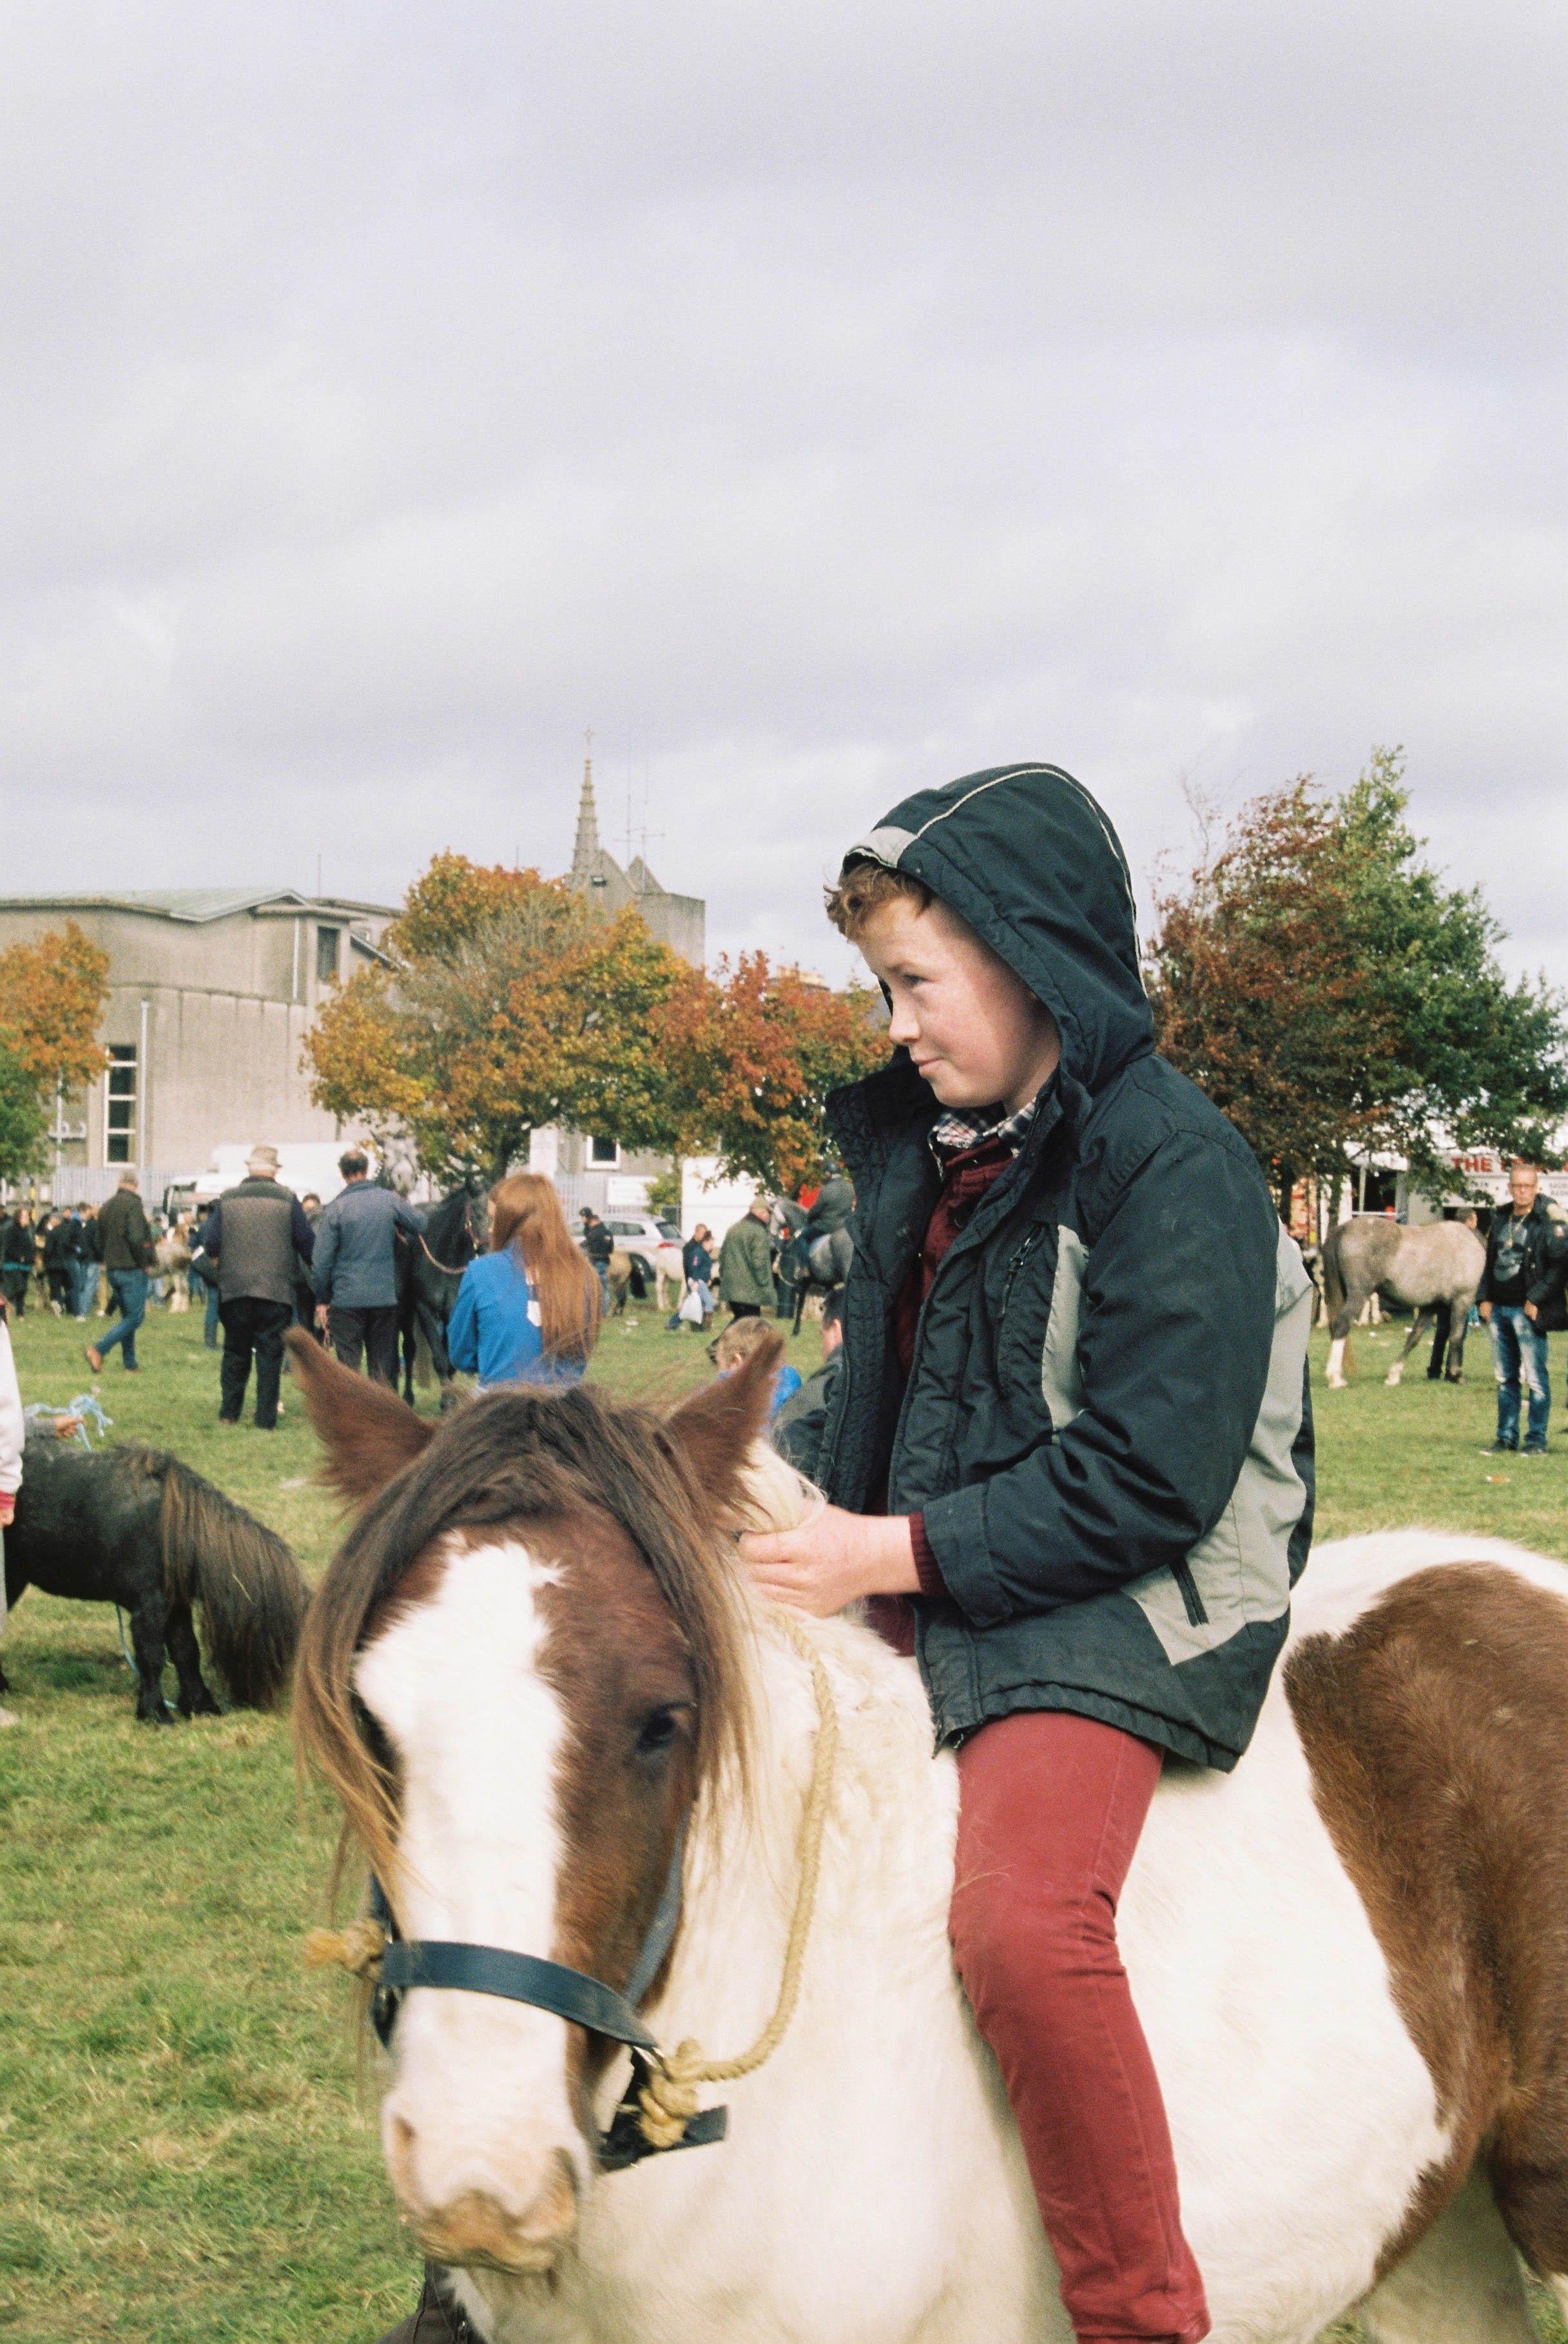 Marion Bergin Color Photograph - Boy on Horse - Ballinasloe Horse Fair, Ireland, 2018